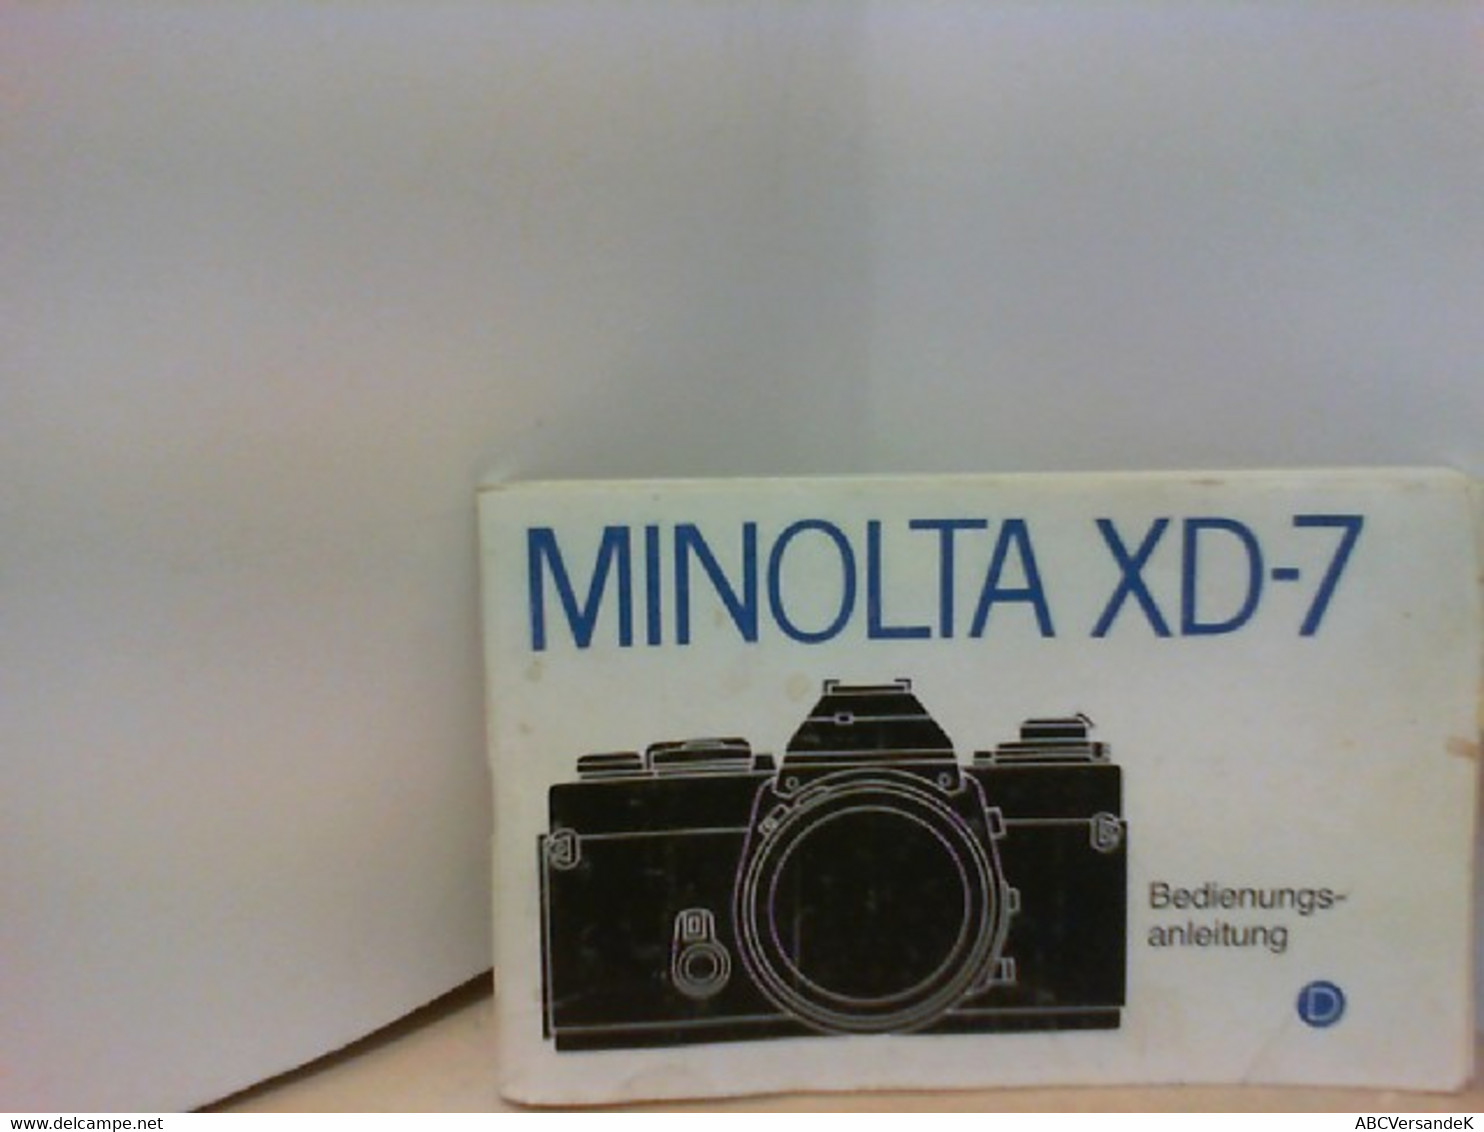 MINOLTA XD - 7 Bedienungsanleitung - Fotografie